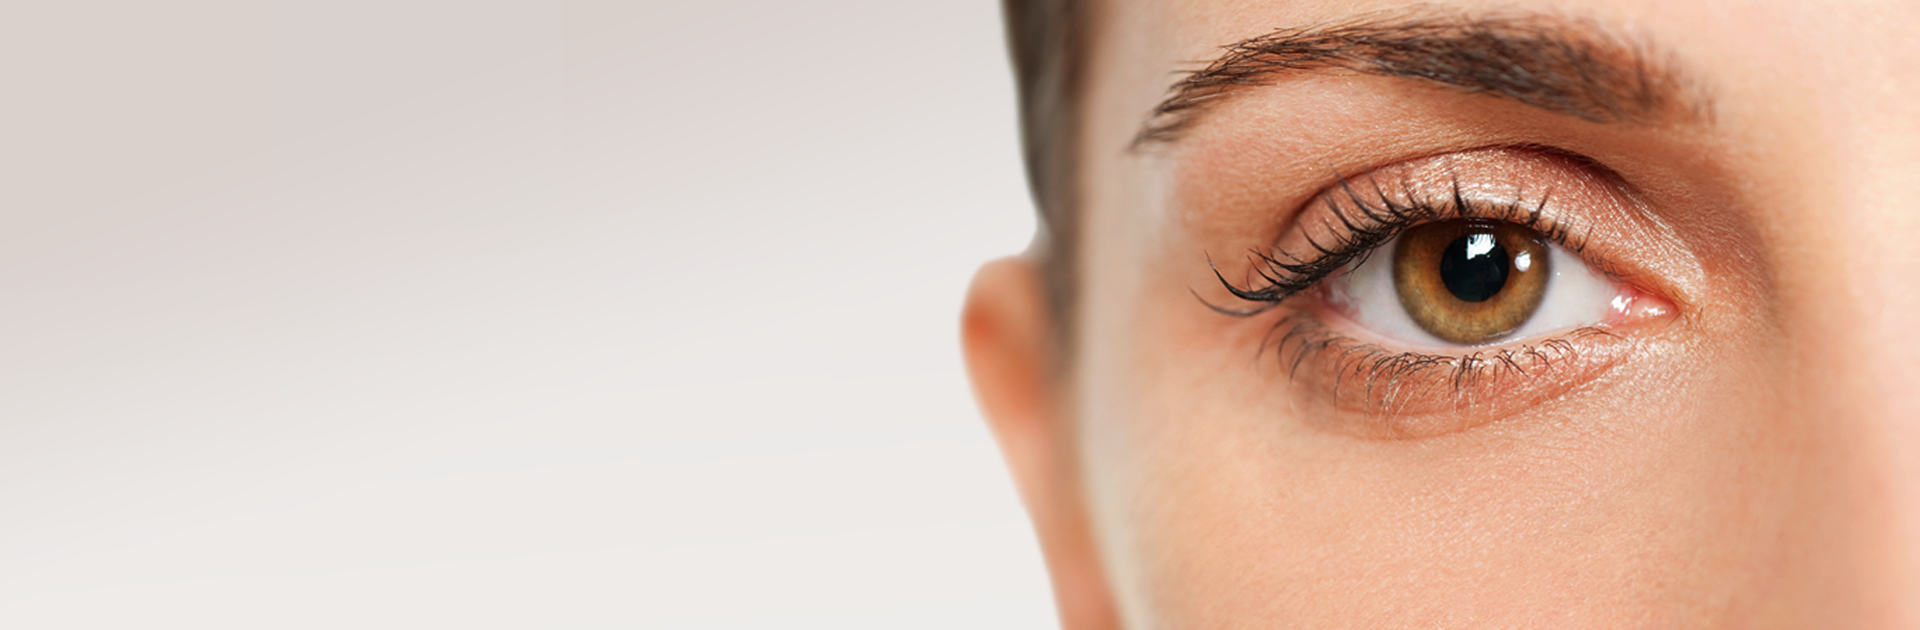 Plastische Chirurgie der Augenlider – Blepharoplastik